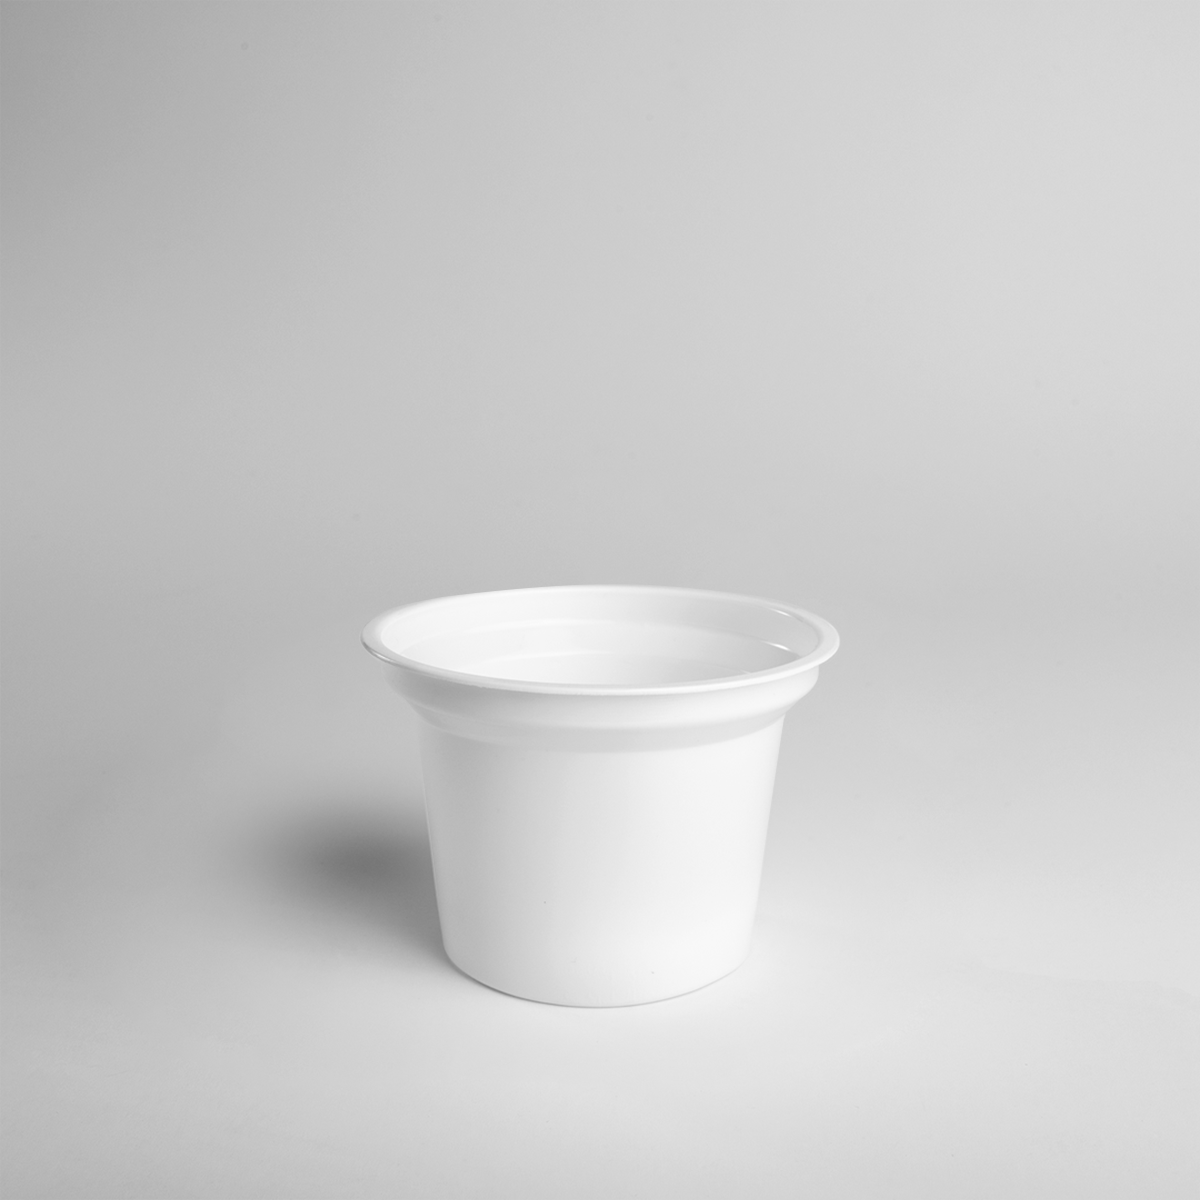 Cup (200 pieces)